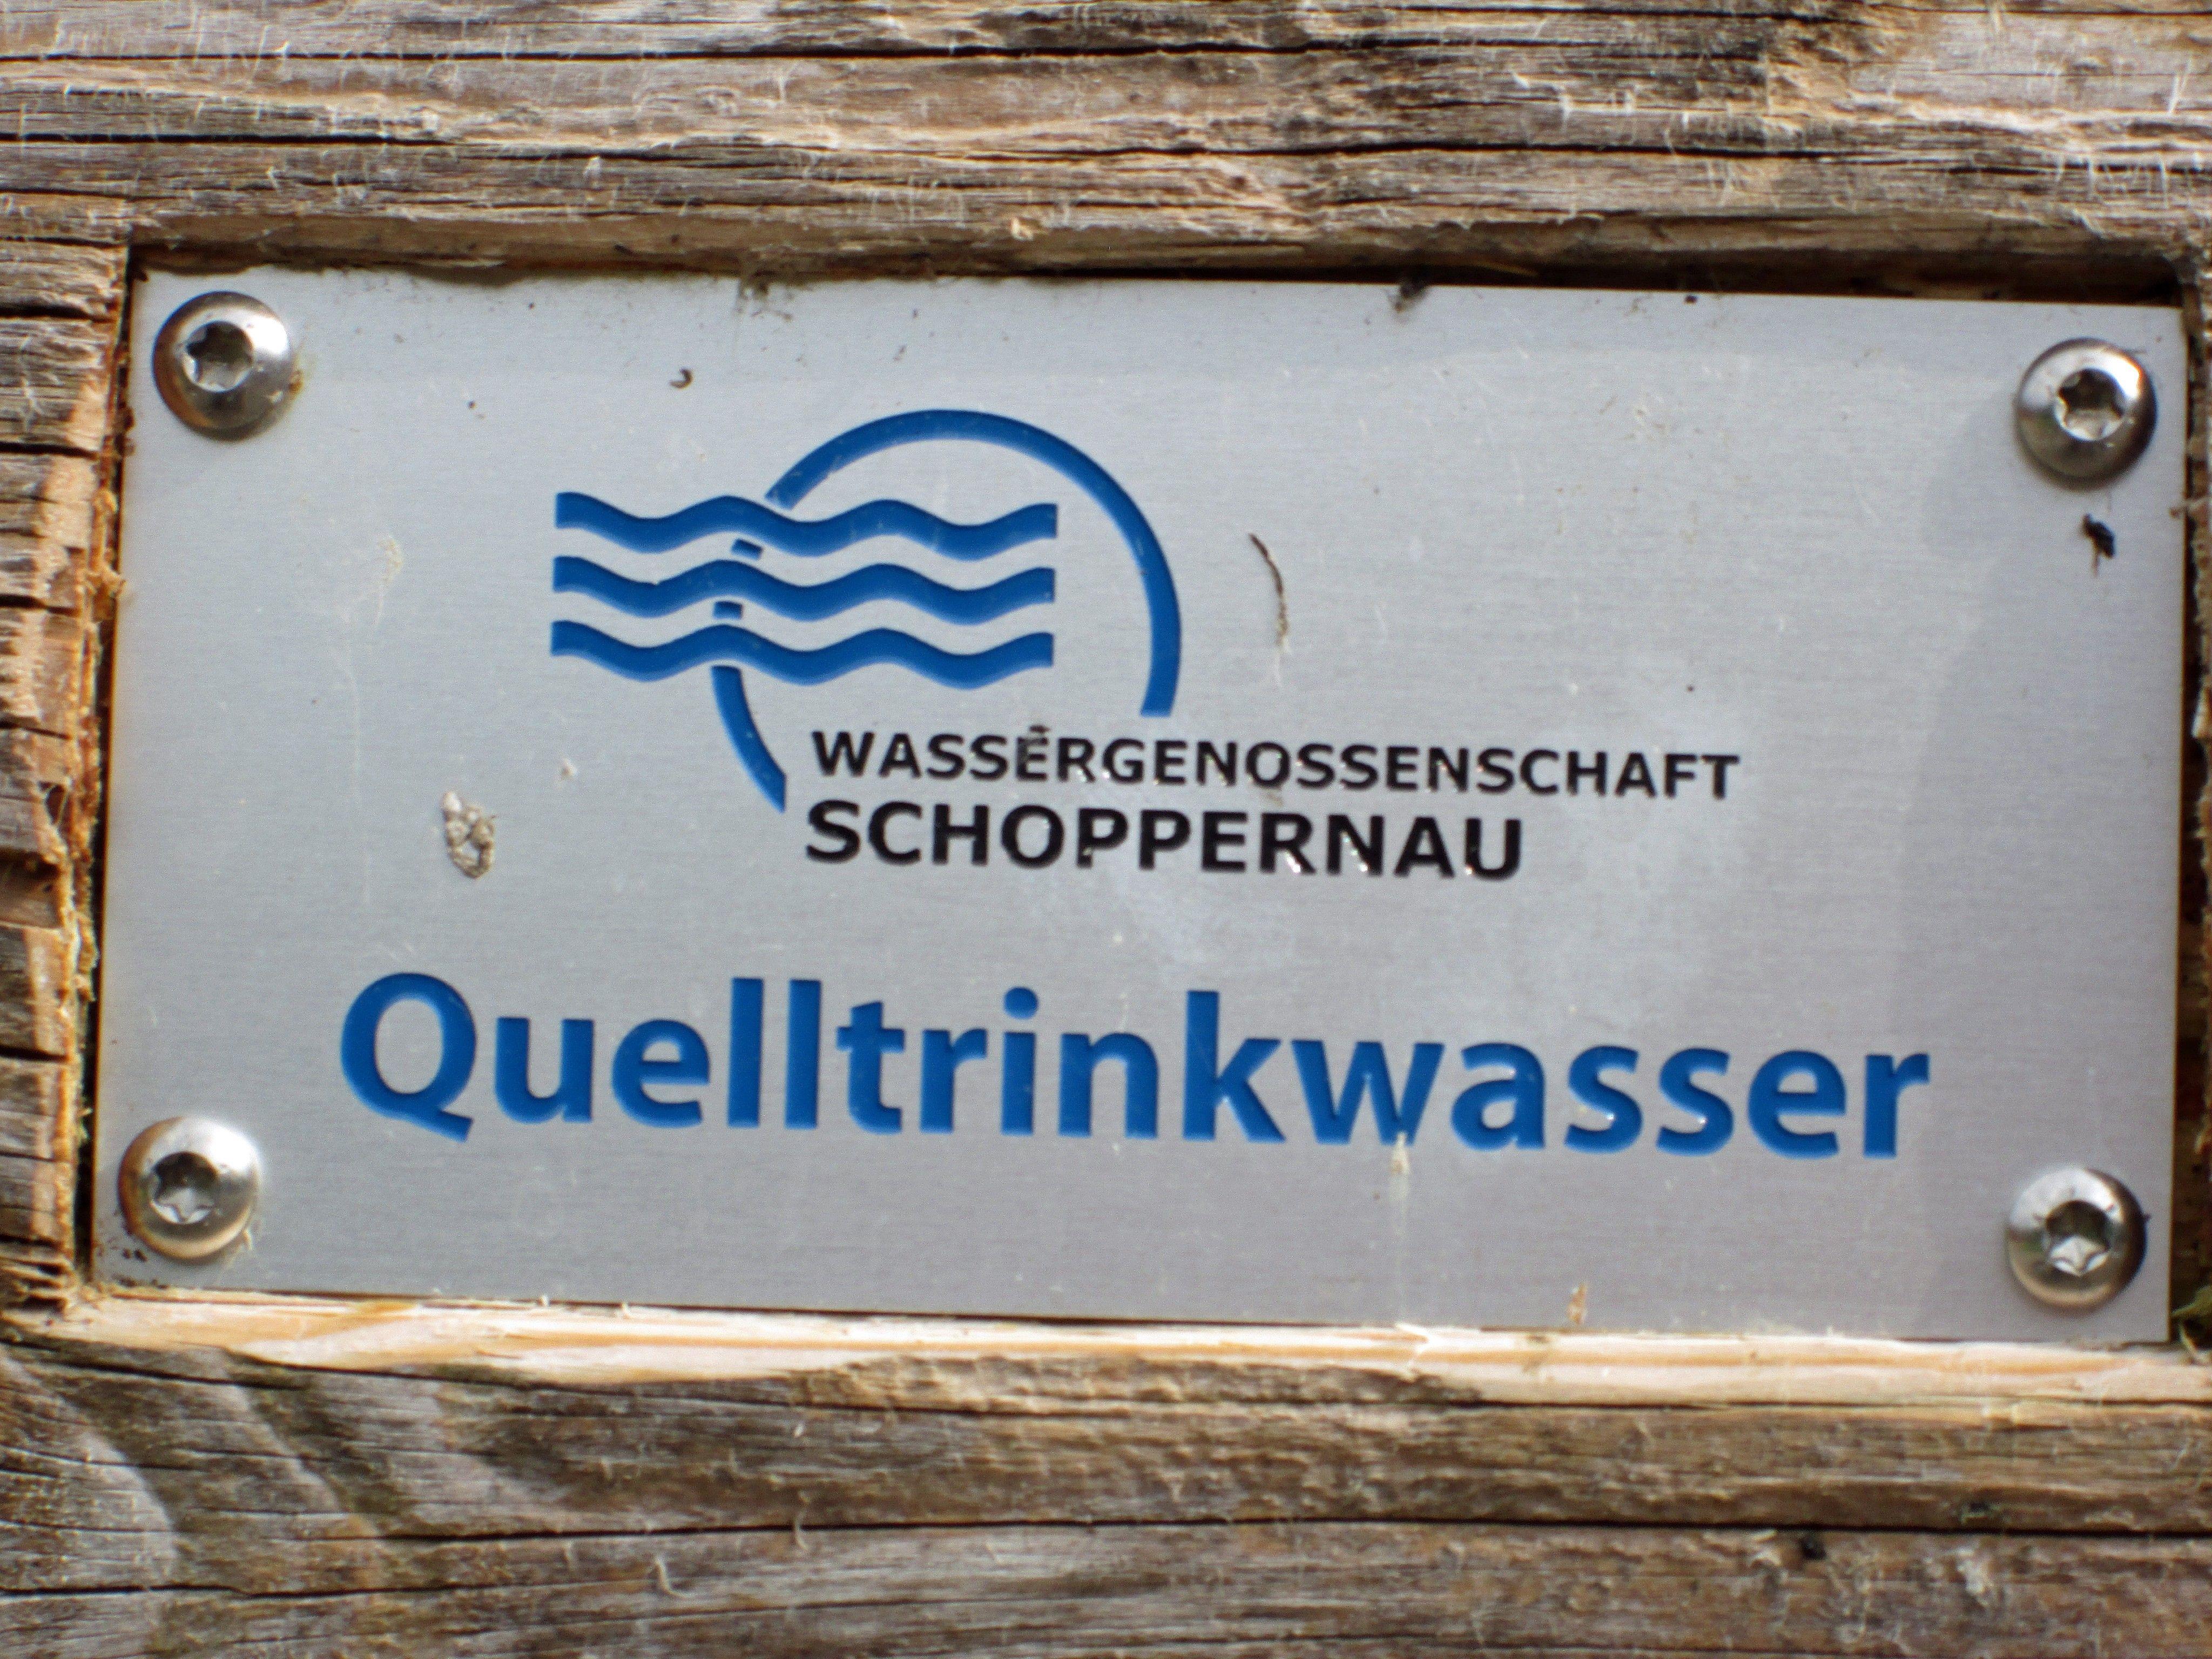 Diese Schilder findet man an jedem öffentlichen Brunnen, welcher vom Netz der Wassergenossenschaft versorgt wird.